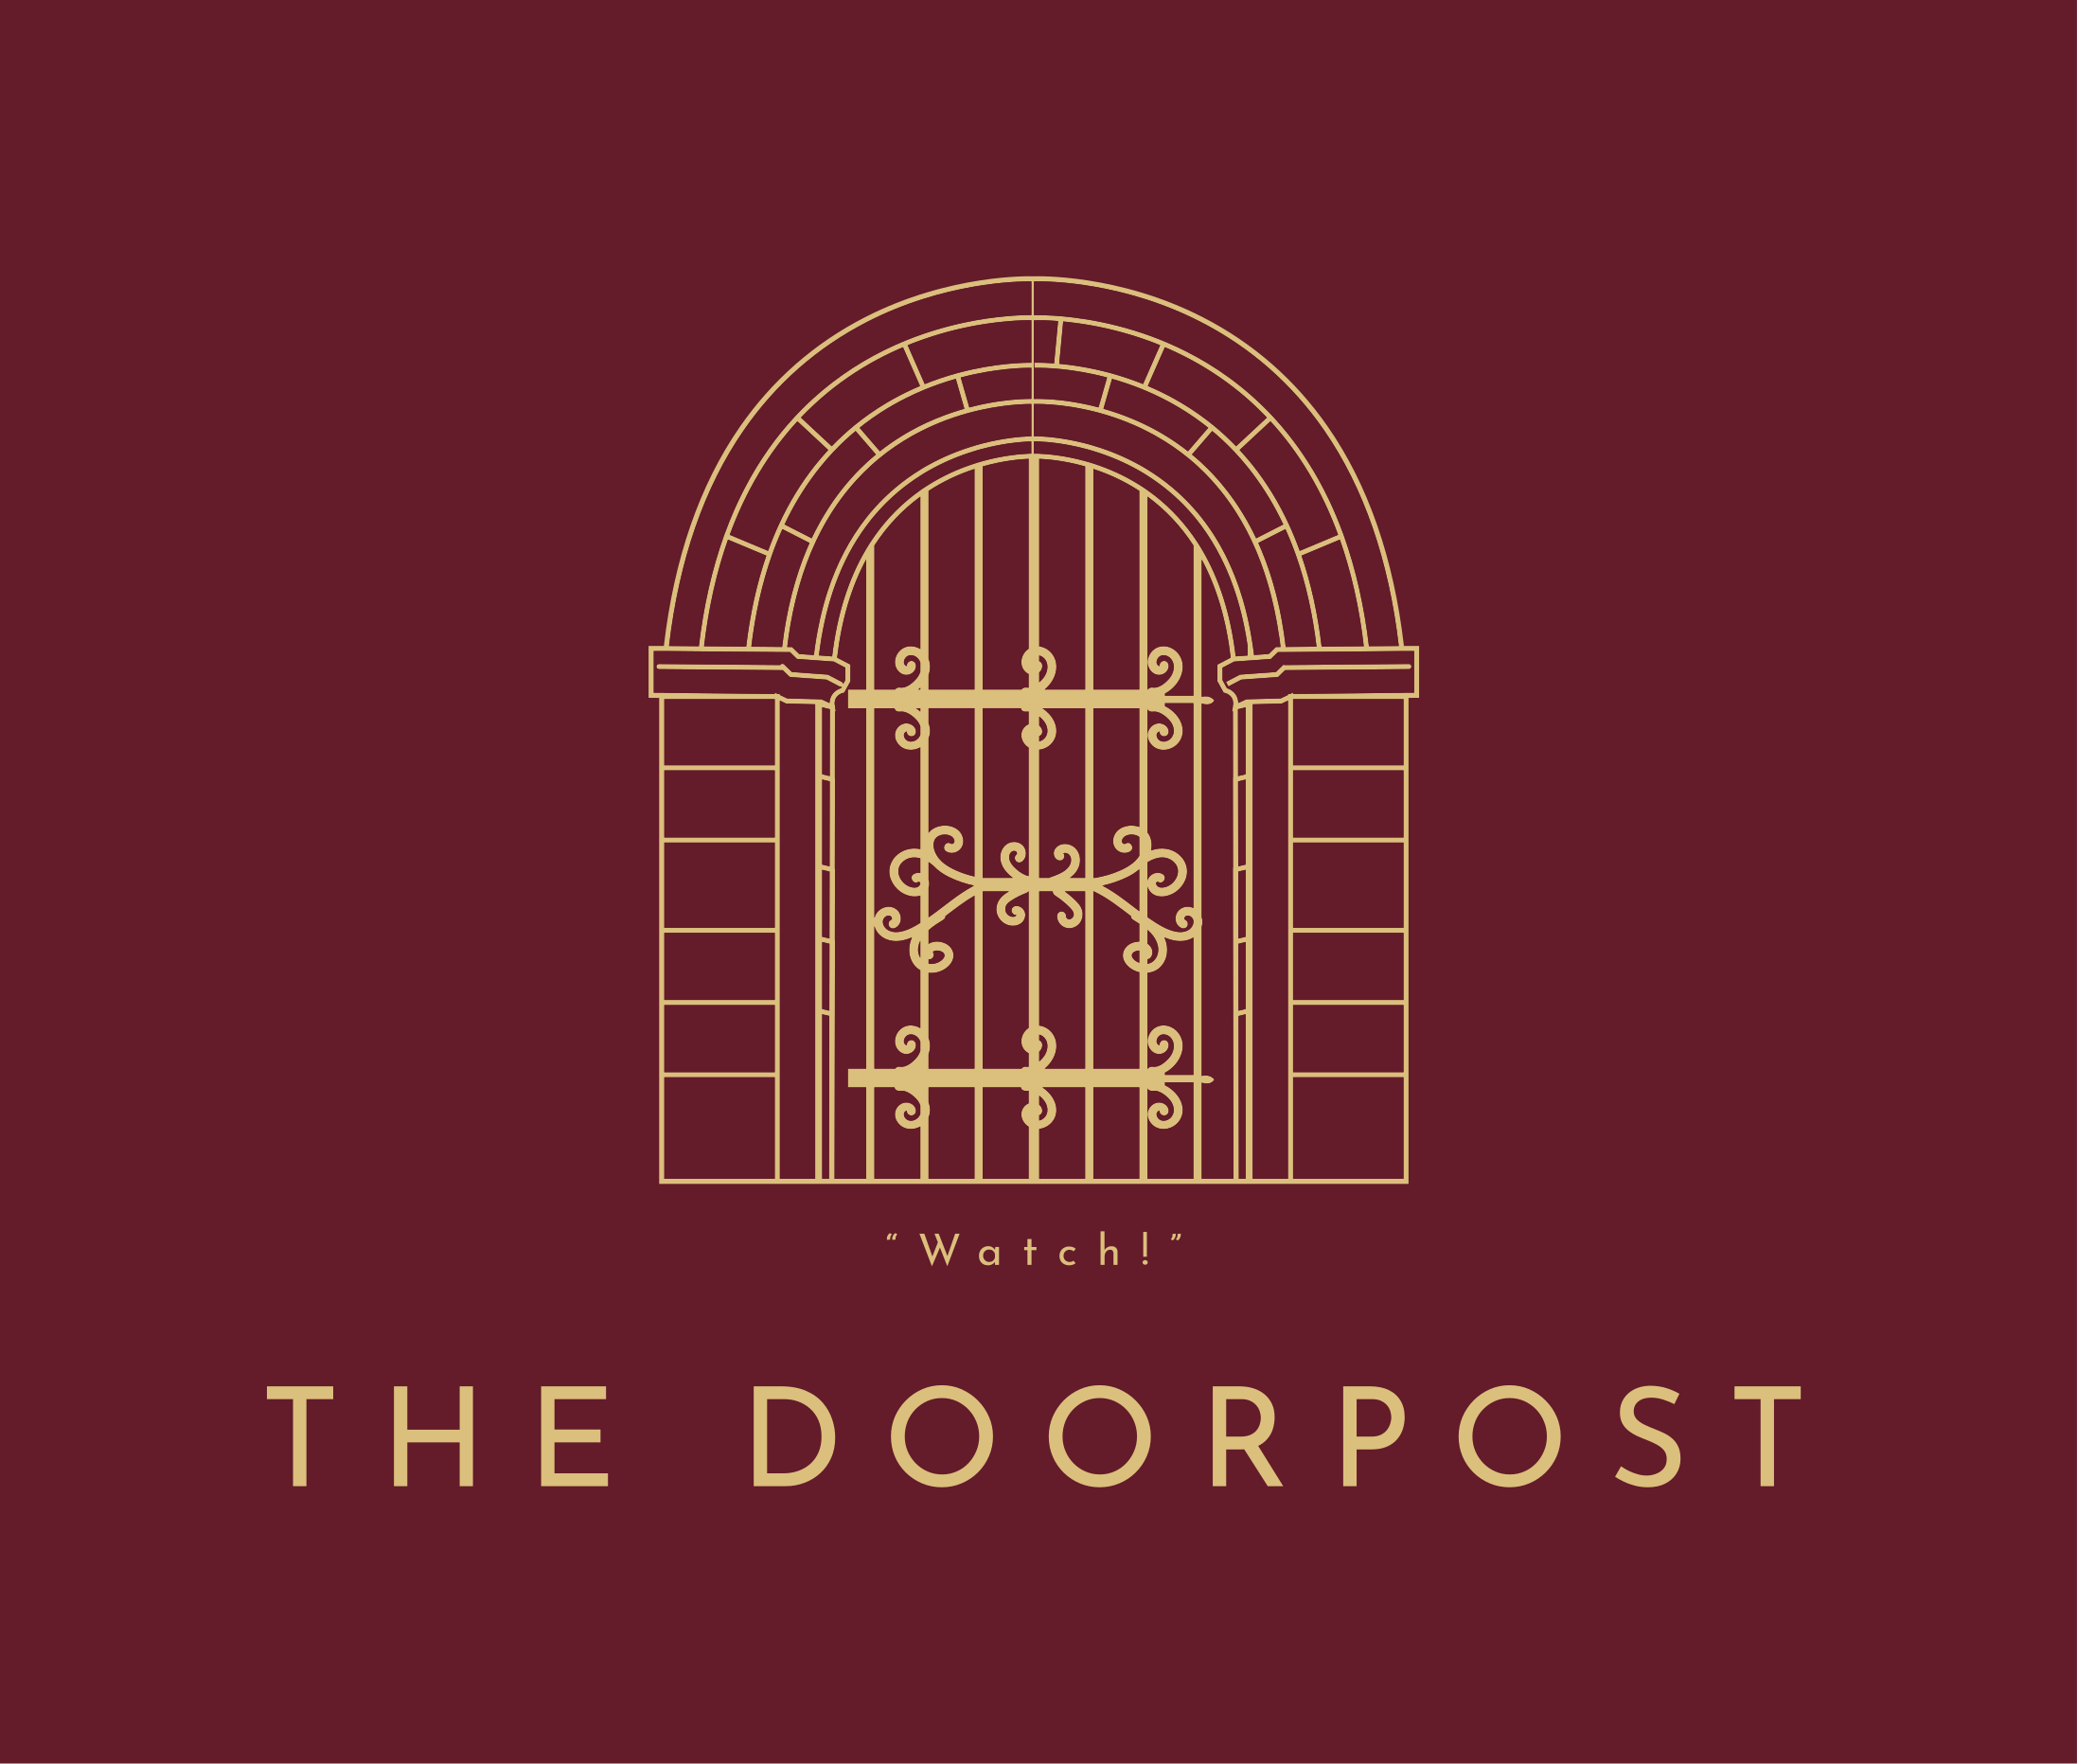 The Doorpost